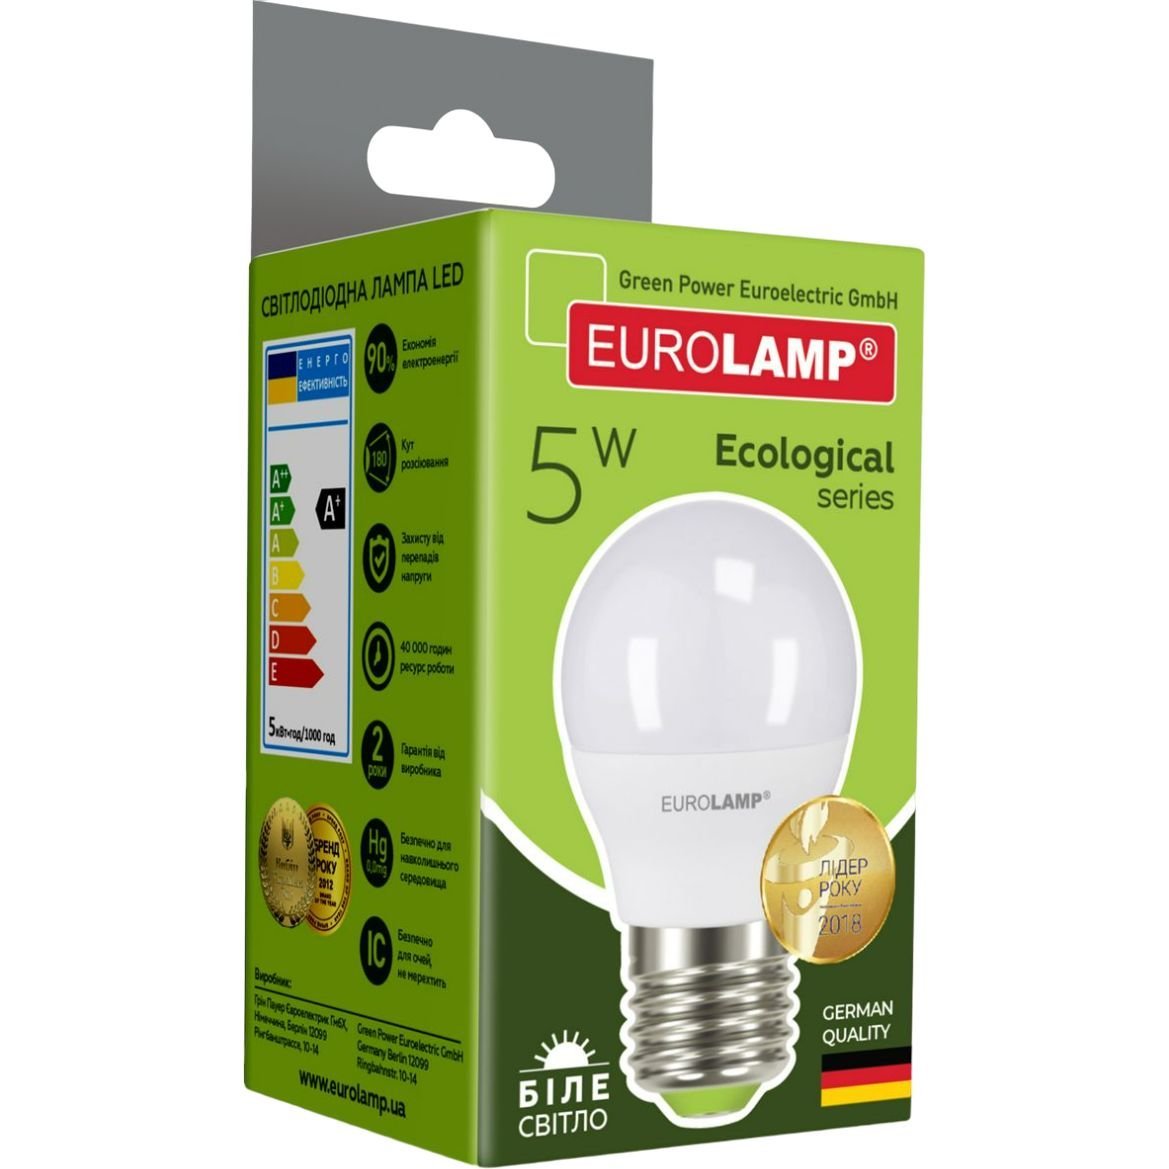 Світлодіодна лампа Eurolamp LED Ecological Series, G45, 5W, E27, 4000K (LED-G45-05274(P)) - фото 4